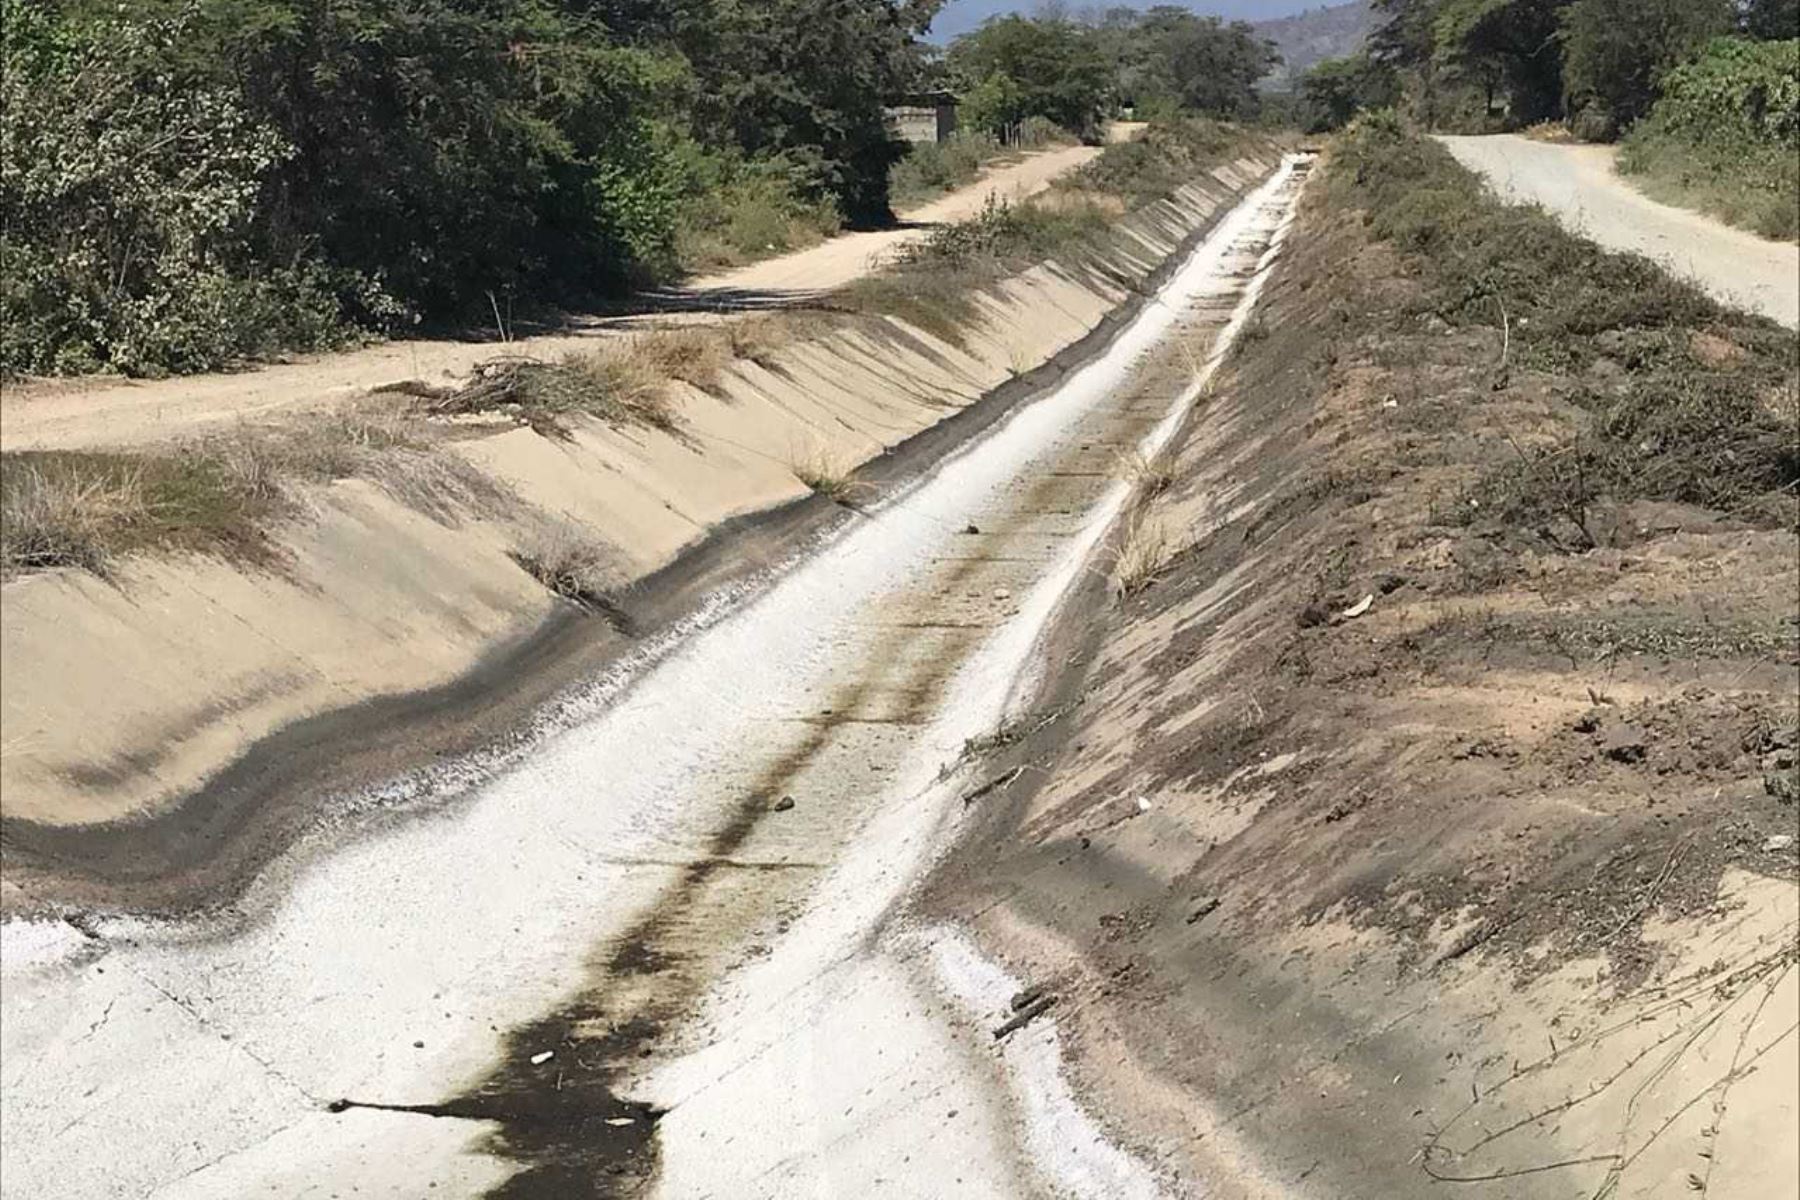 El próximo 15 de agosto concluirá la limpieza y extracción de lodo, piedras y maleza de 26 kilómetros del canal Tambo Grande, que forma parte del sistema de irrigación San Lorenzo, uno de los más importantes de la región Piura.